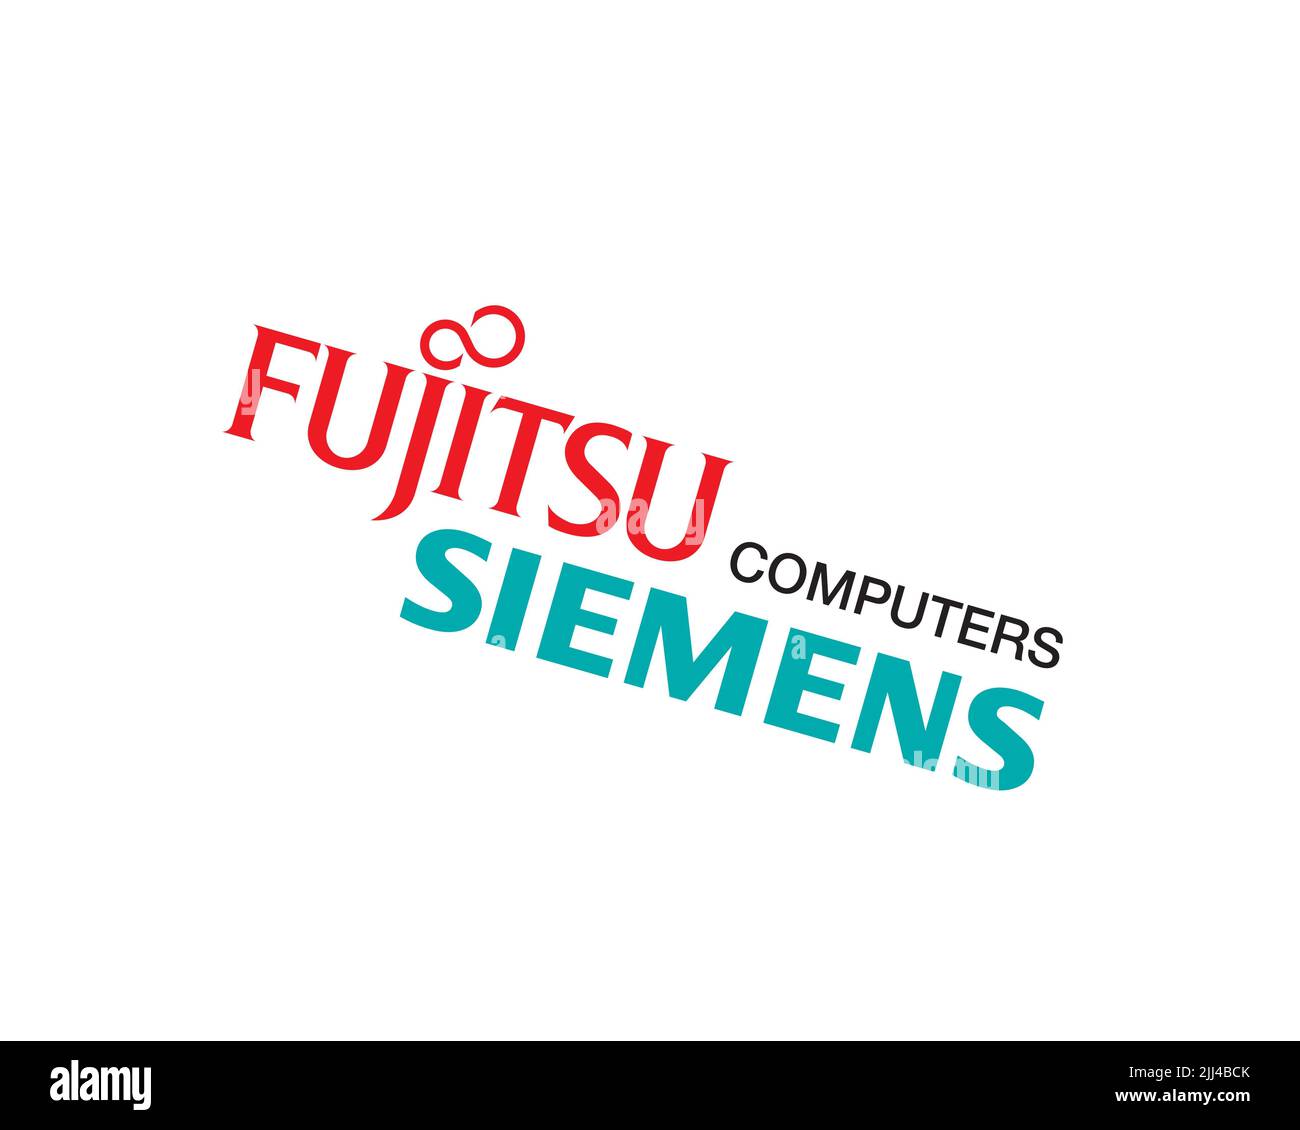 Fujitsu Siemens Computers, gedrehtes Logo, Weisser Hintergrund B Stock Photo